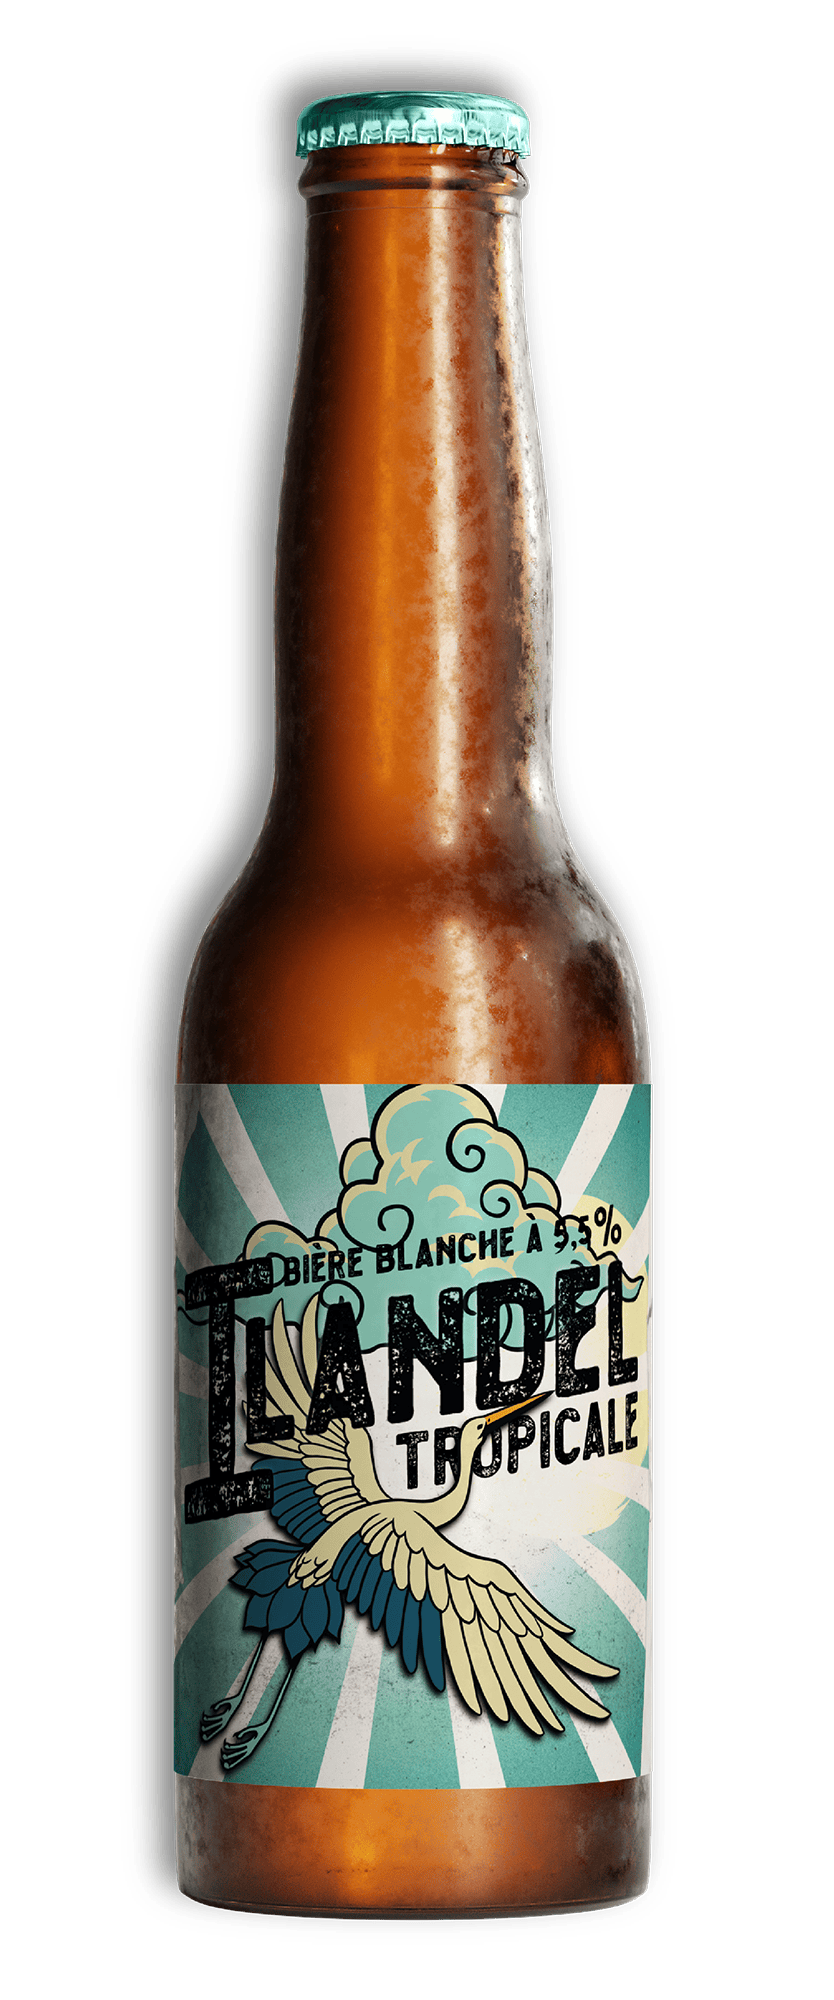 Bière Insulaire ilandel tropicale micro brasserie insulaire normandie